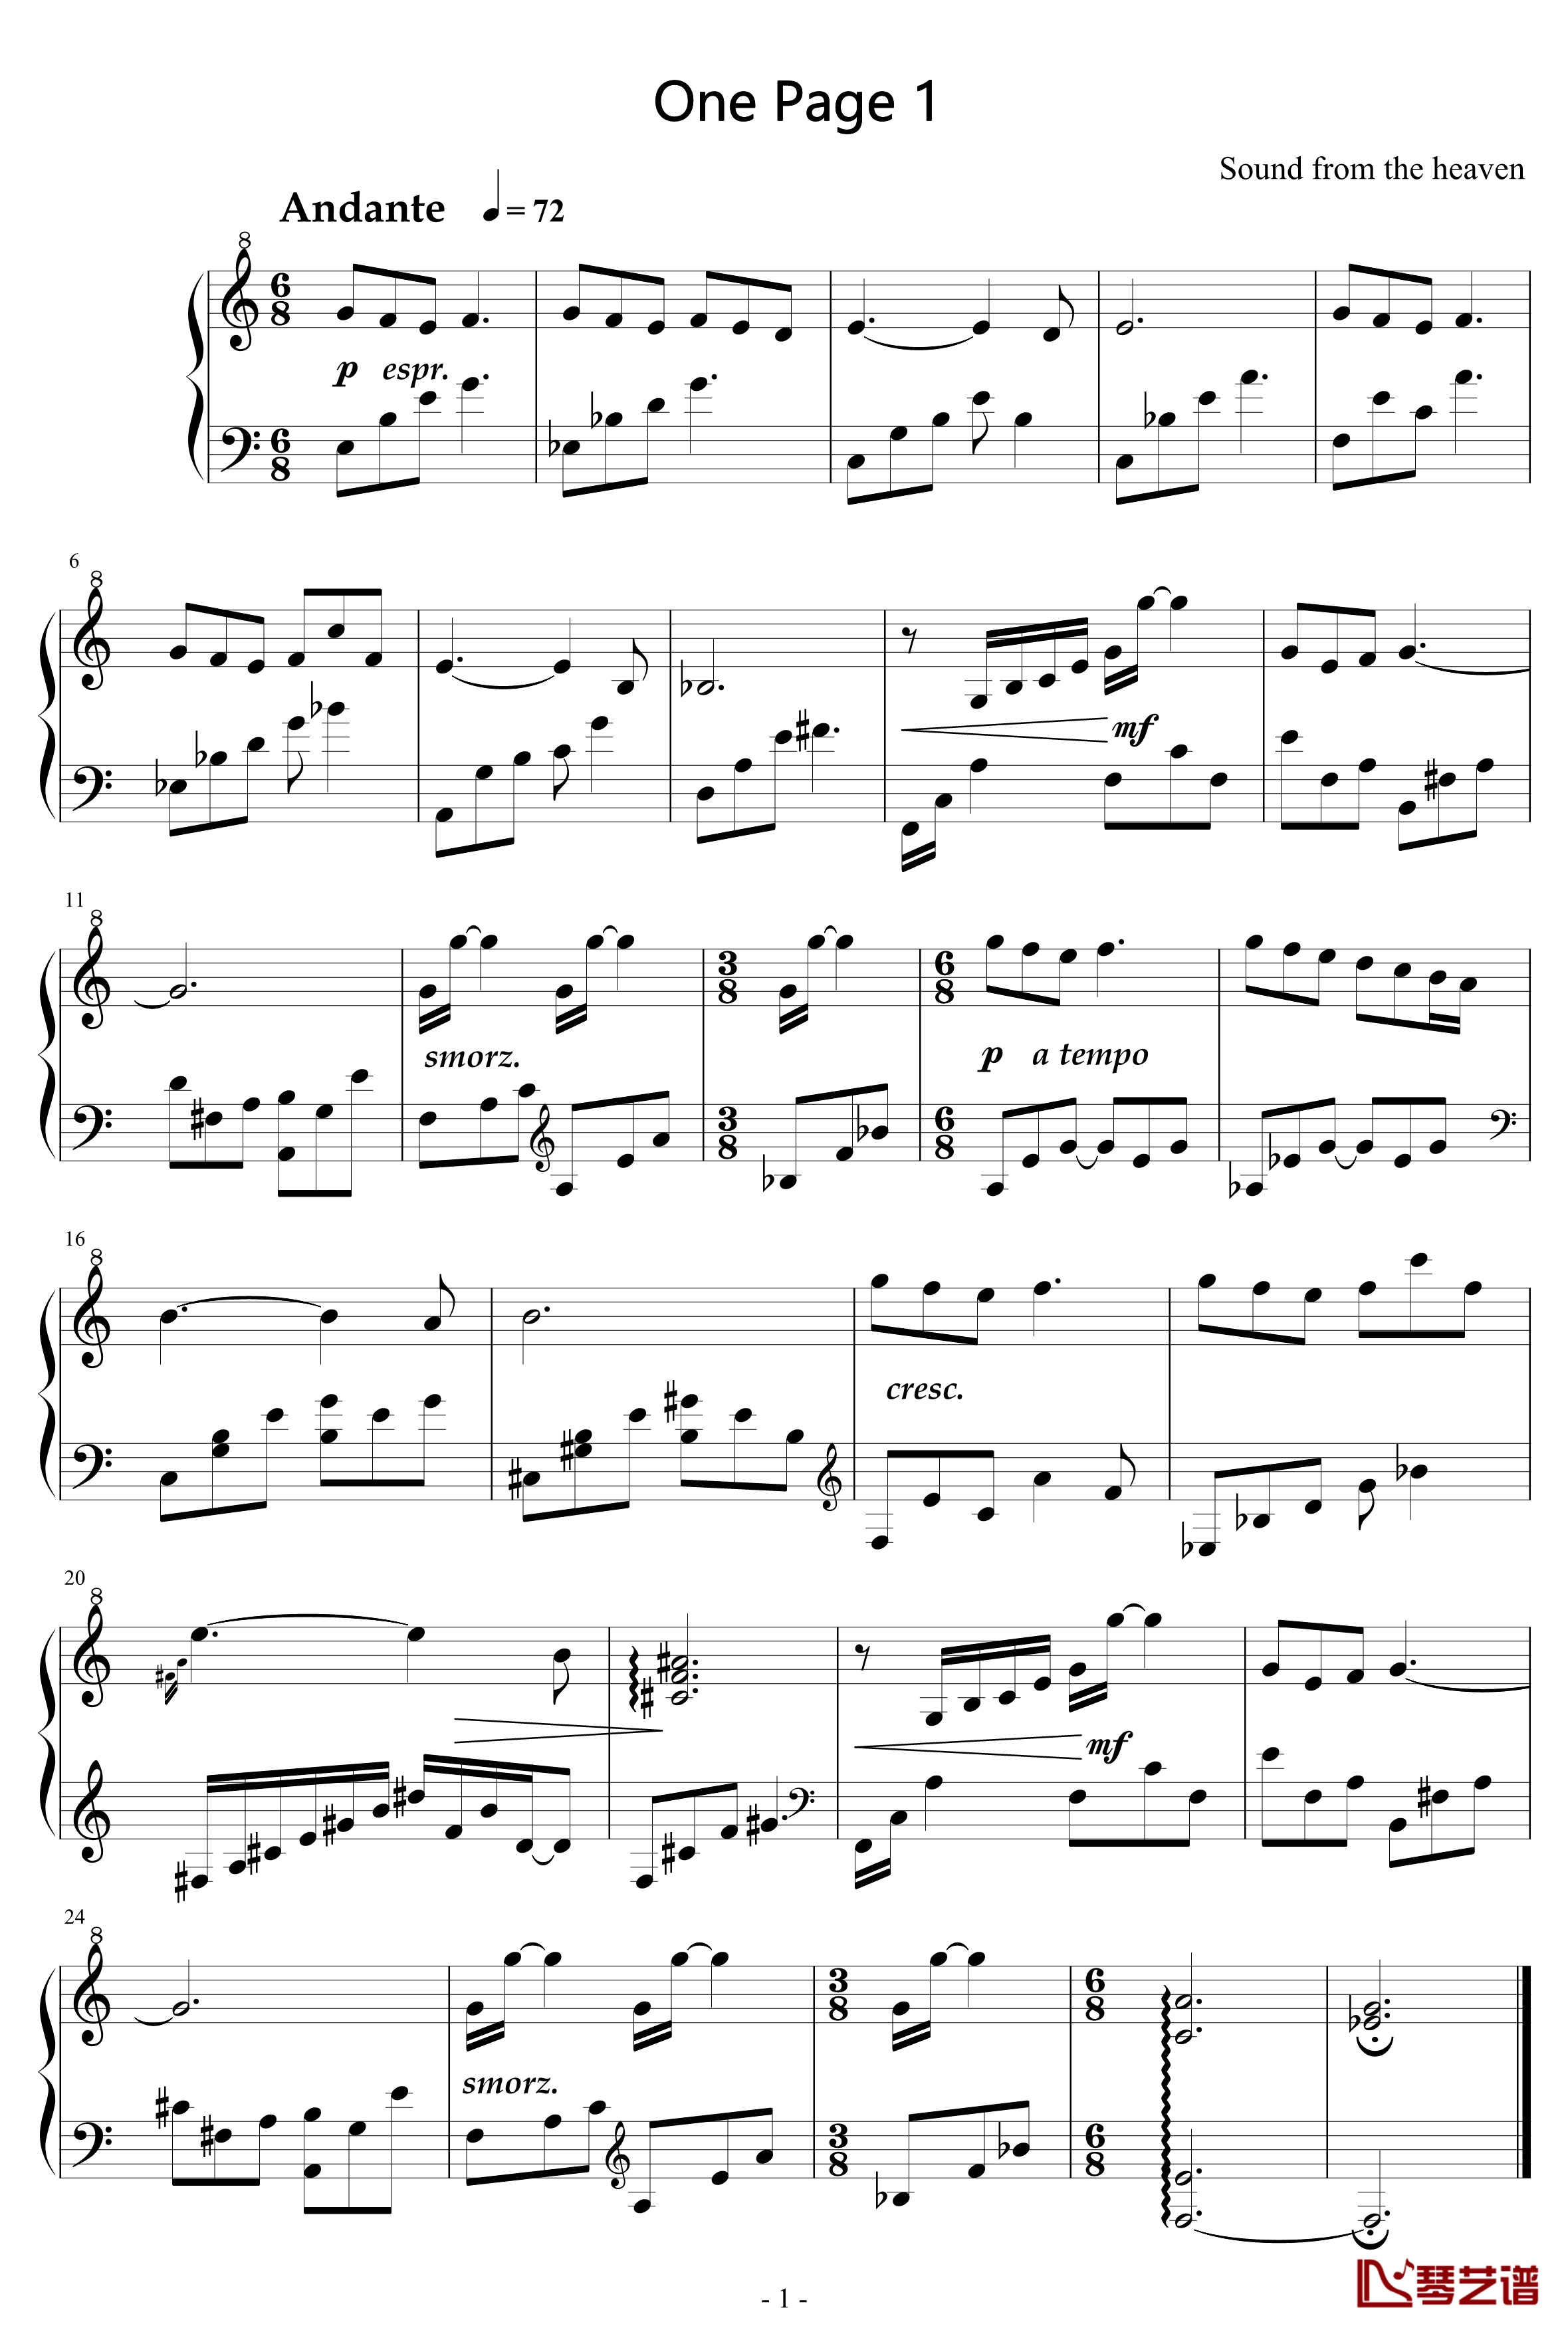 一页曲1钢琴谱-天籁传声1